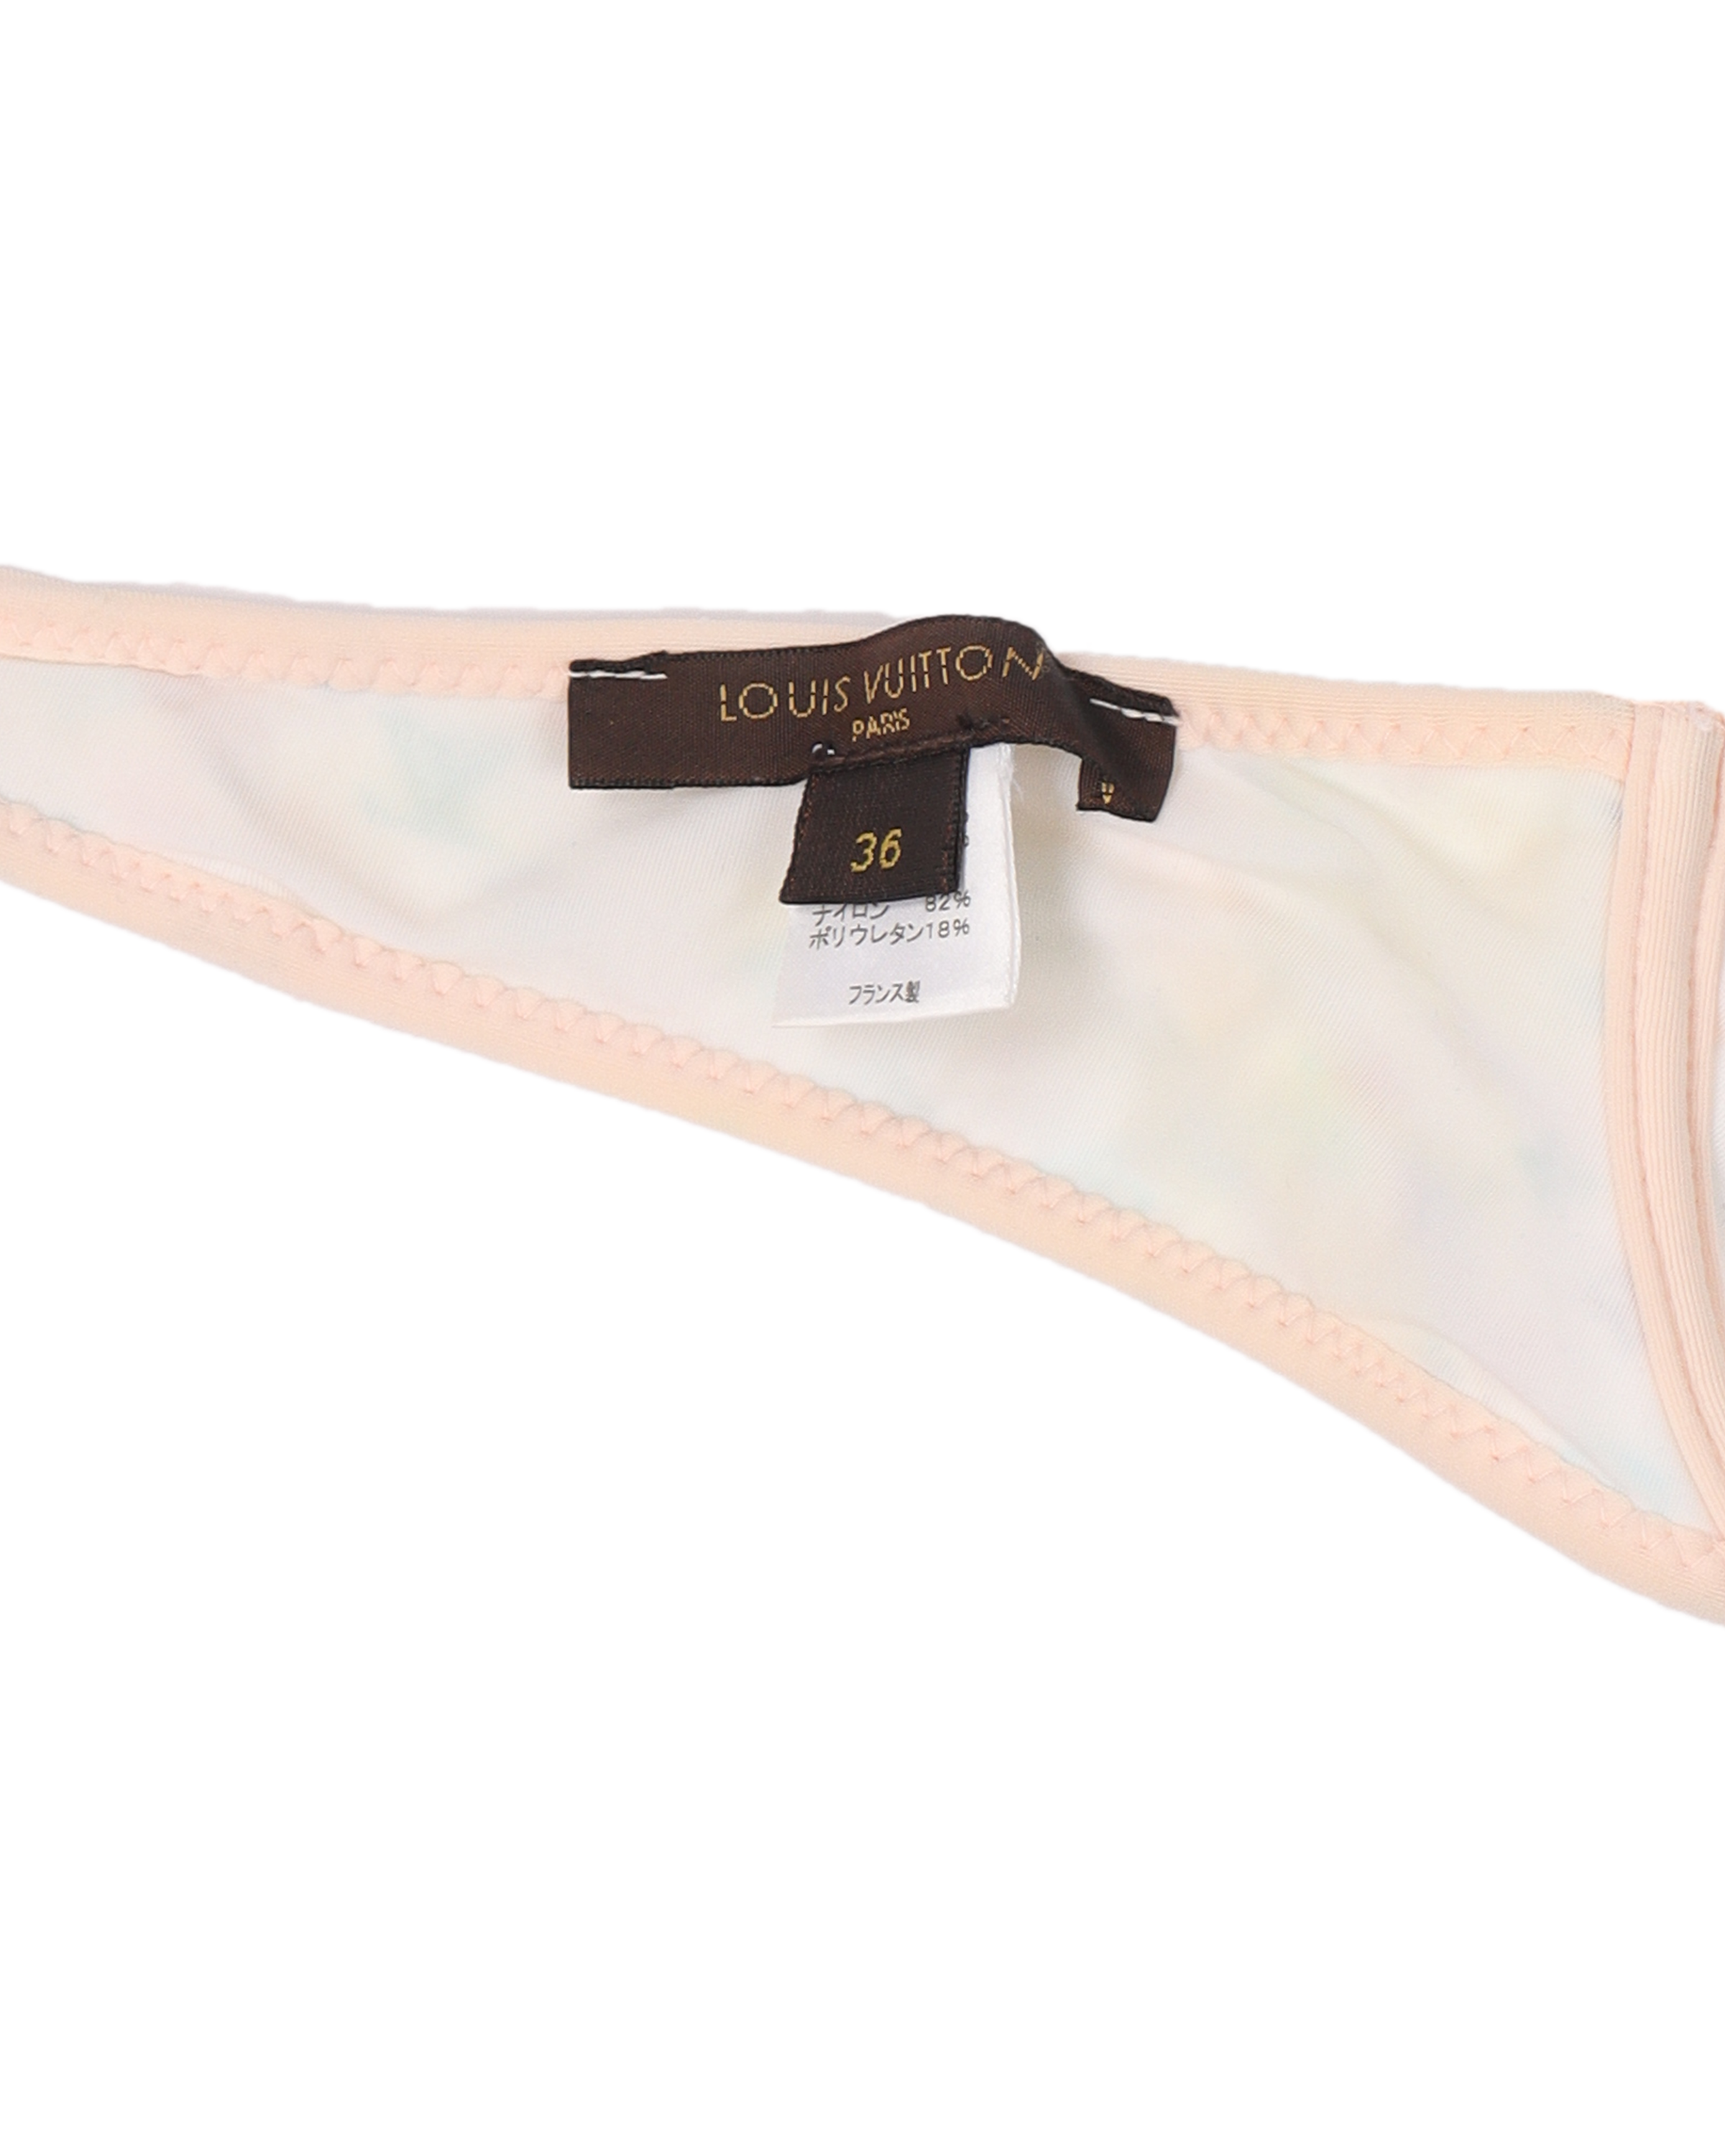 Louis Vuitton Monogram bikini top #IRVRSBLworld